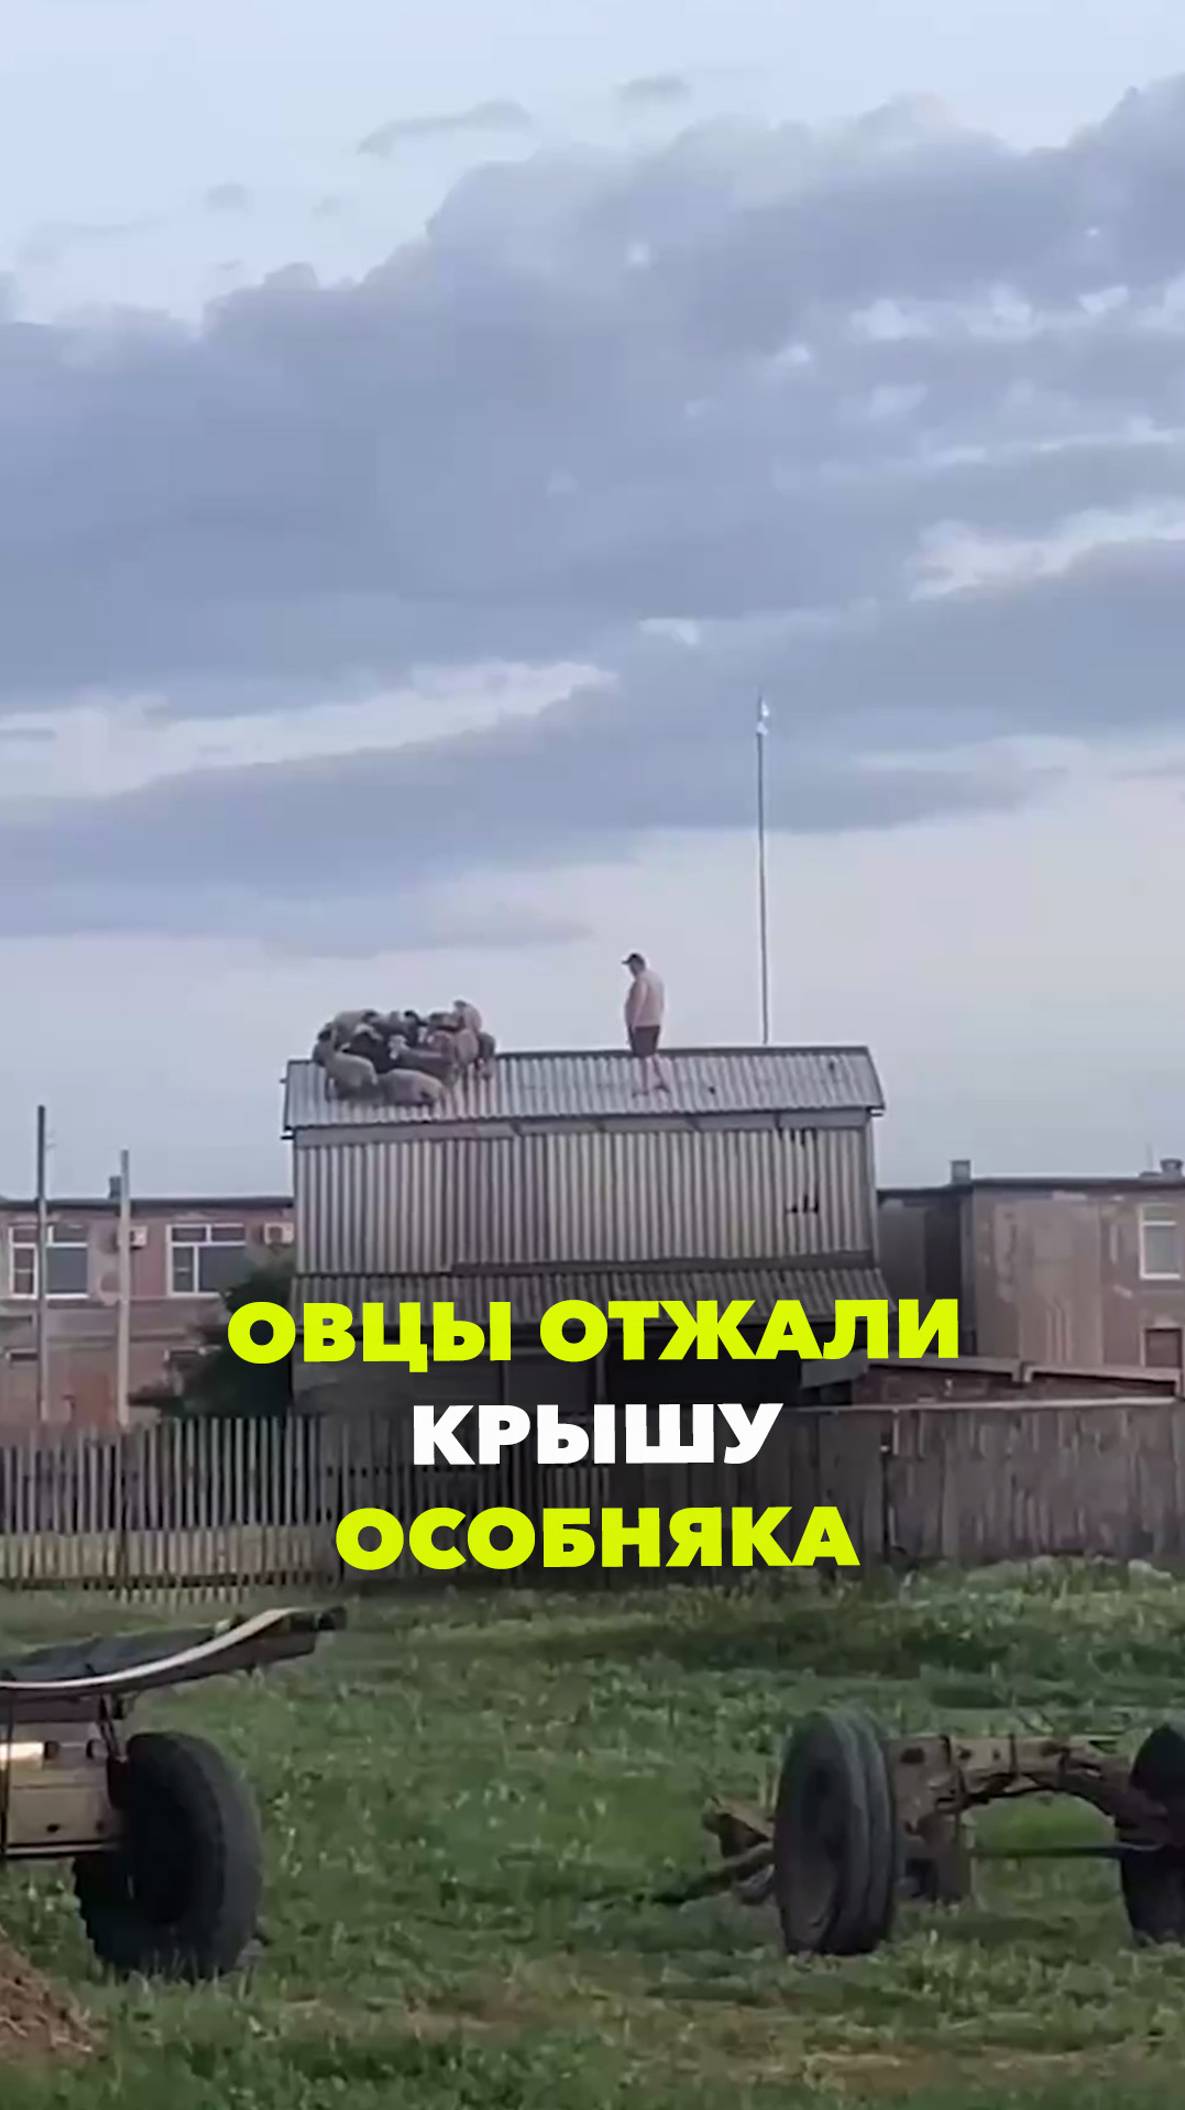 Отара овец потерялась на крыше сеновала в Омске